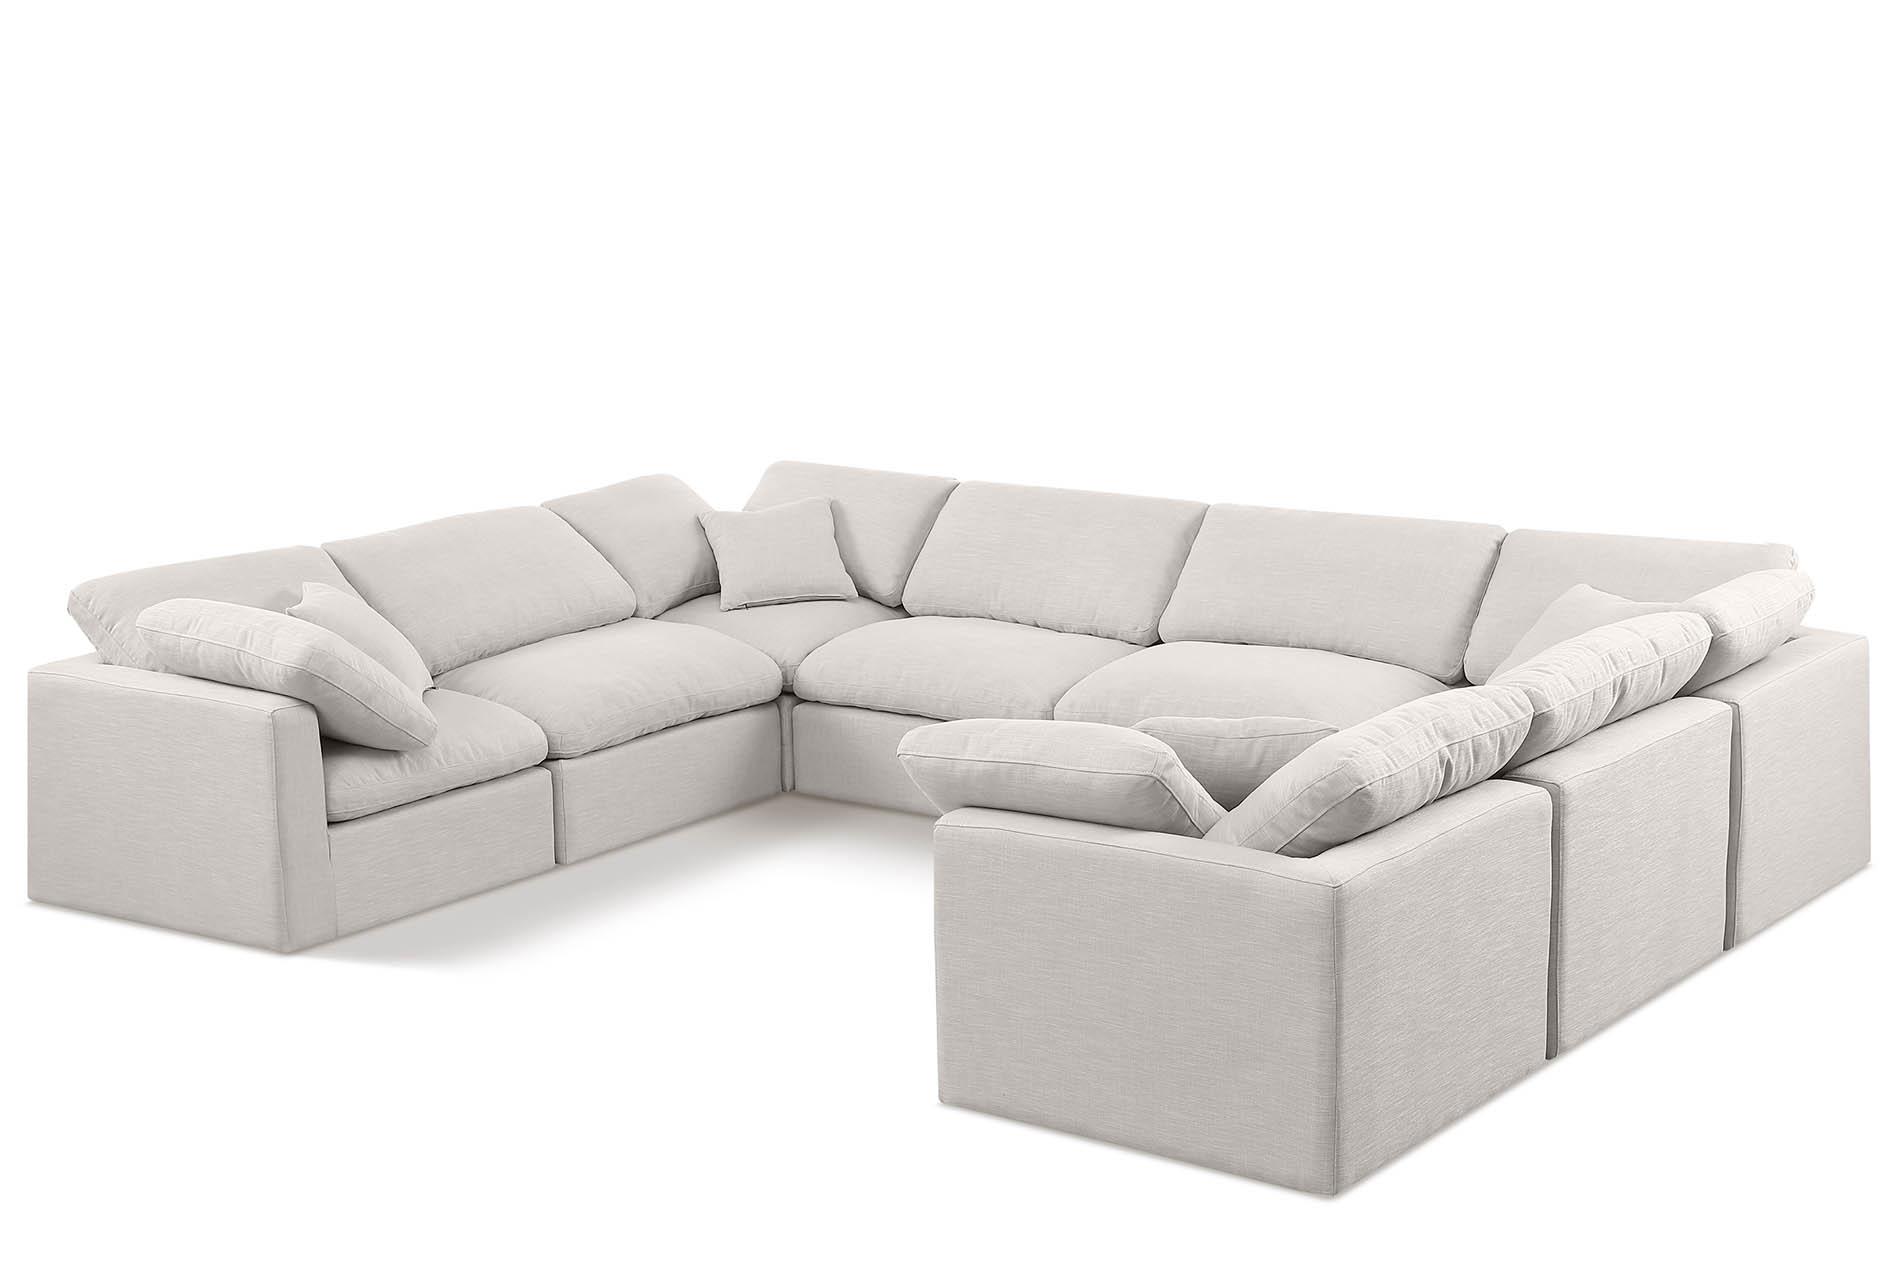 

    
Meridian Furniture INDULGE 141Cream-Sec8A Modular Sectional Cream 141Cream-Sec8A
